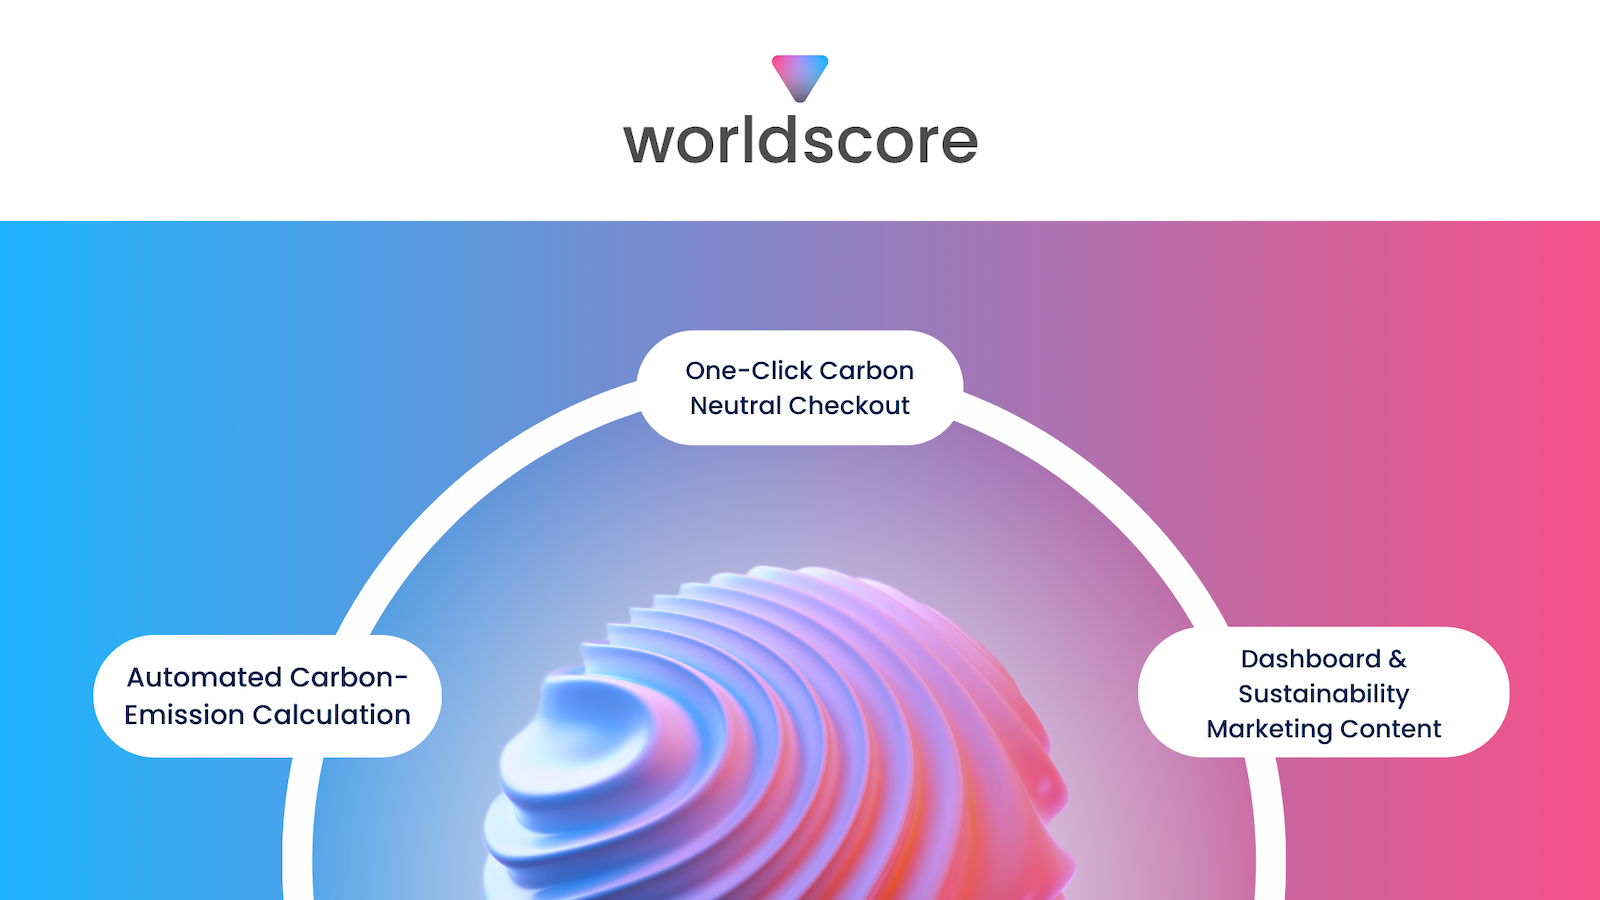 Logo de worldscore en la parte superior de una esfera ondulada describiendo las características